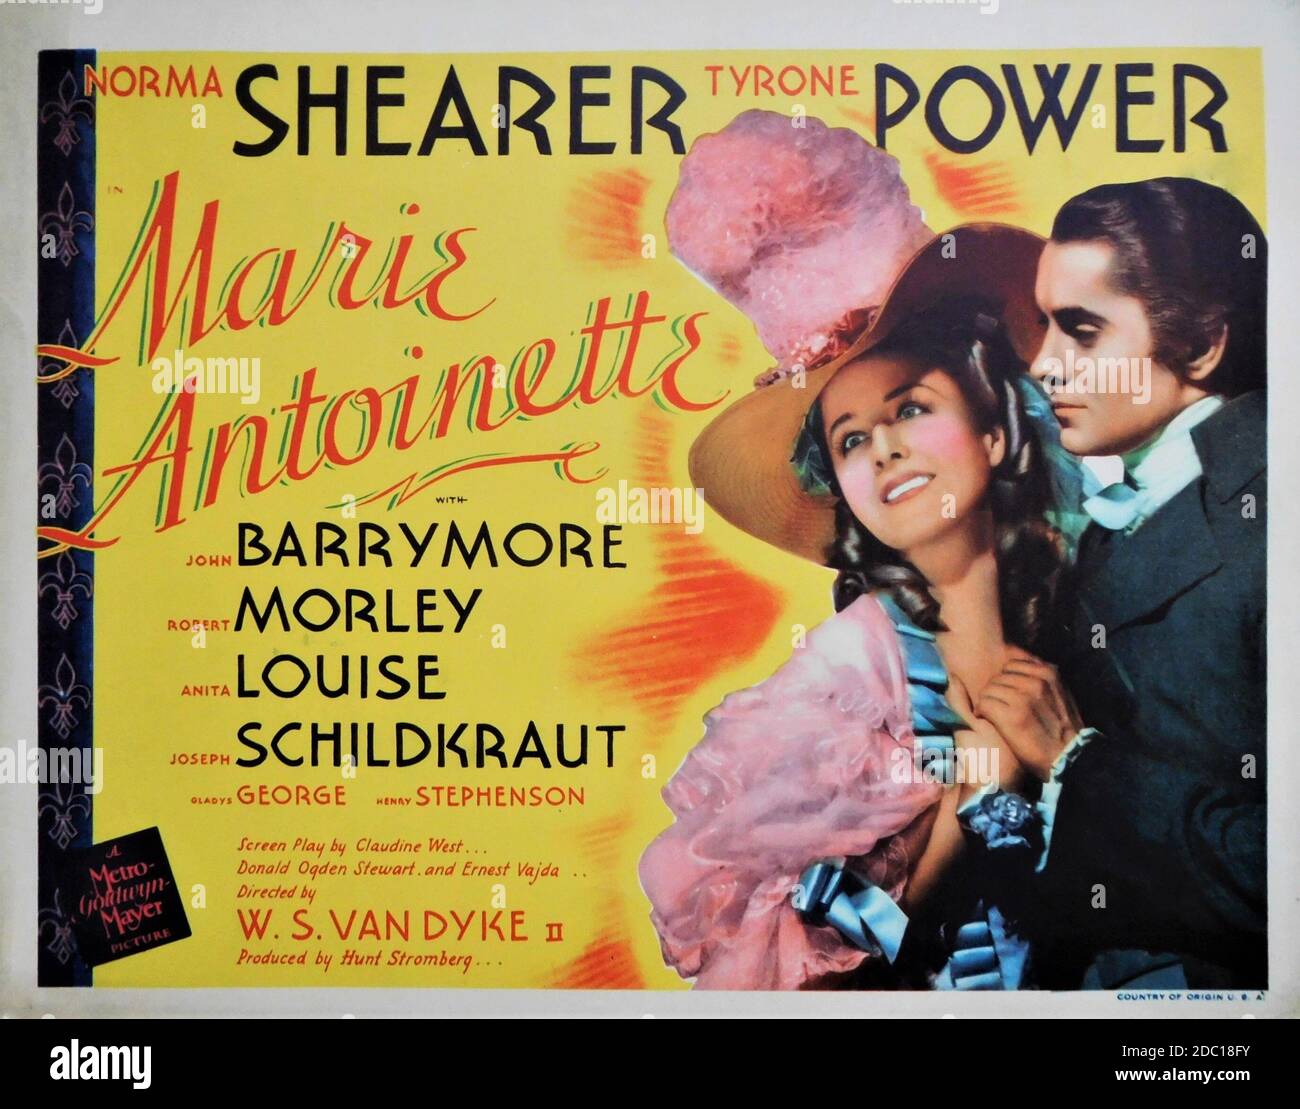 NORMA SHEARER and TYRONE POWER in MARIE ANTOINETTE 1938 director W.S. VAN DYKE Metro Goldwyn Mayer Stock Photo